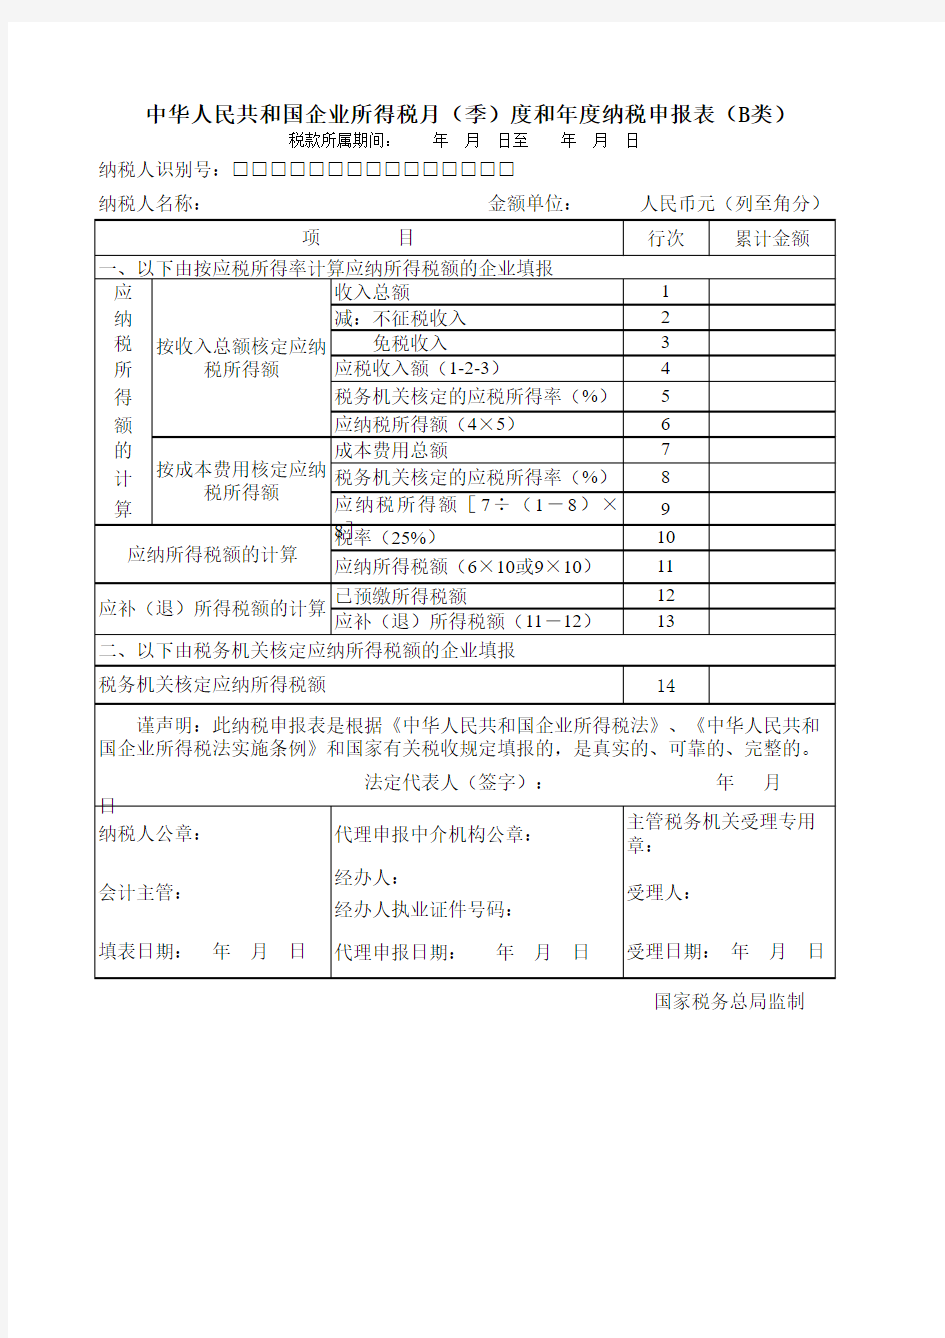 【附件2】中华人民共和国企业所得税纳税月(季)度和年度纳税申报表(B类)